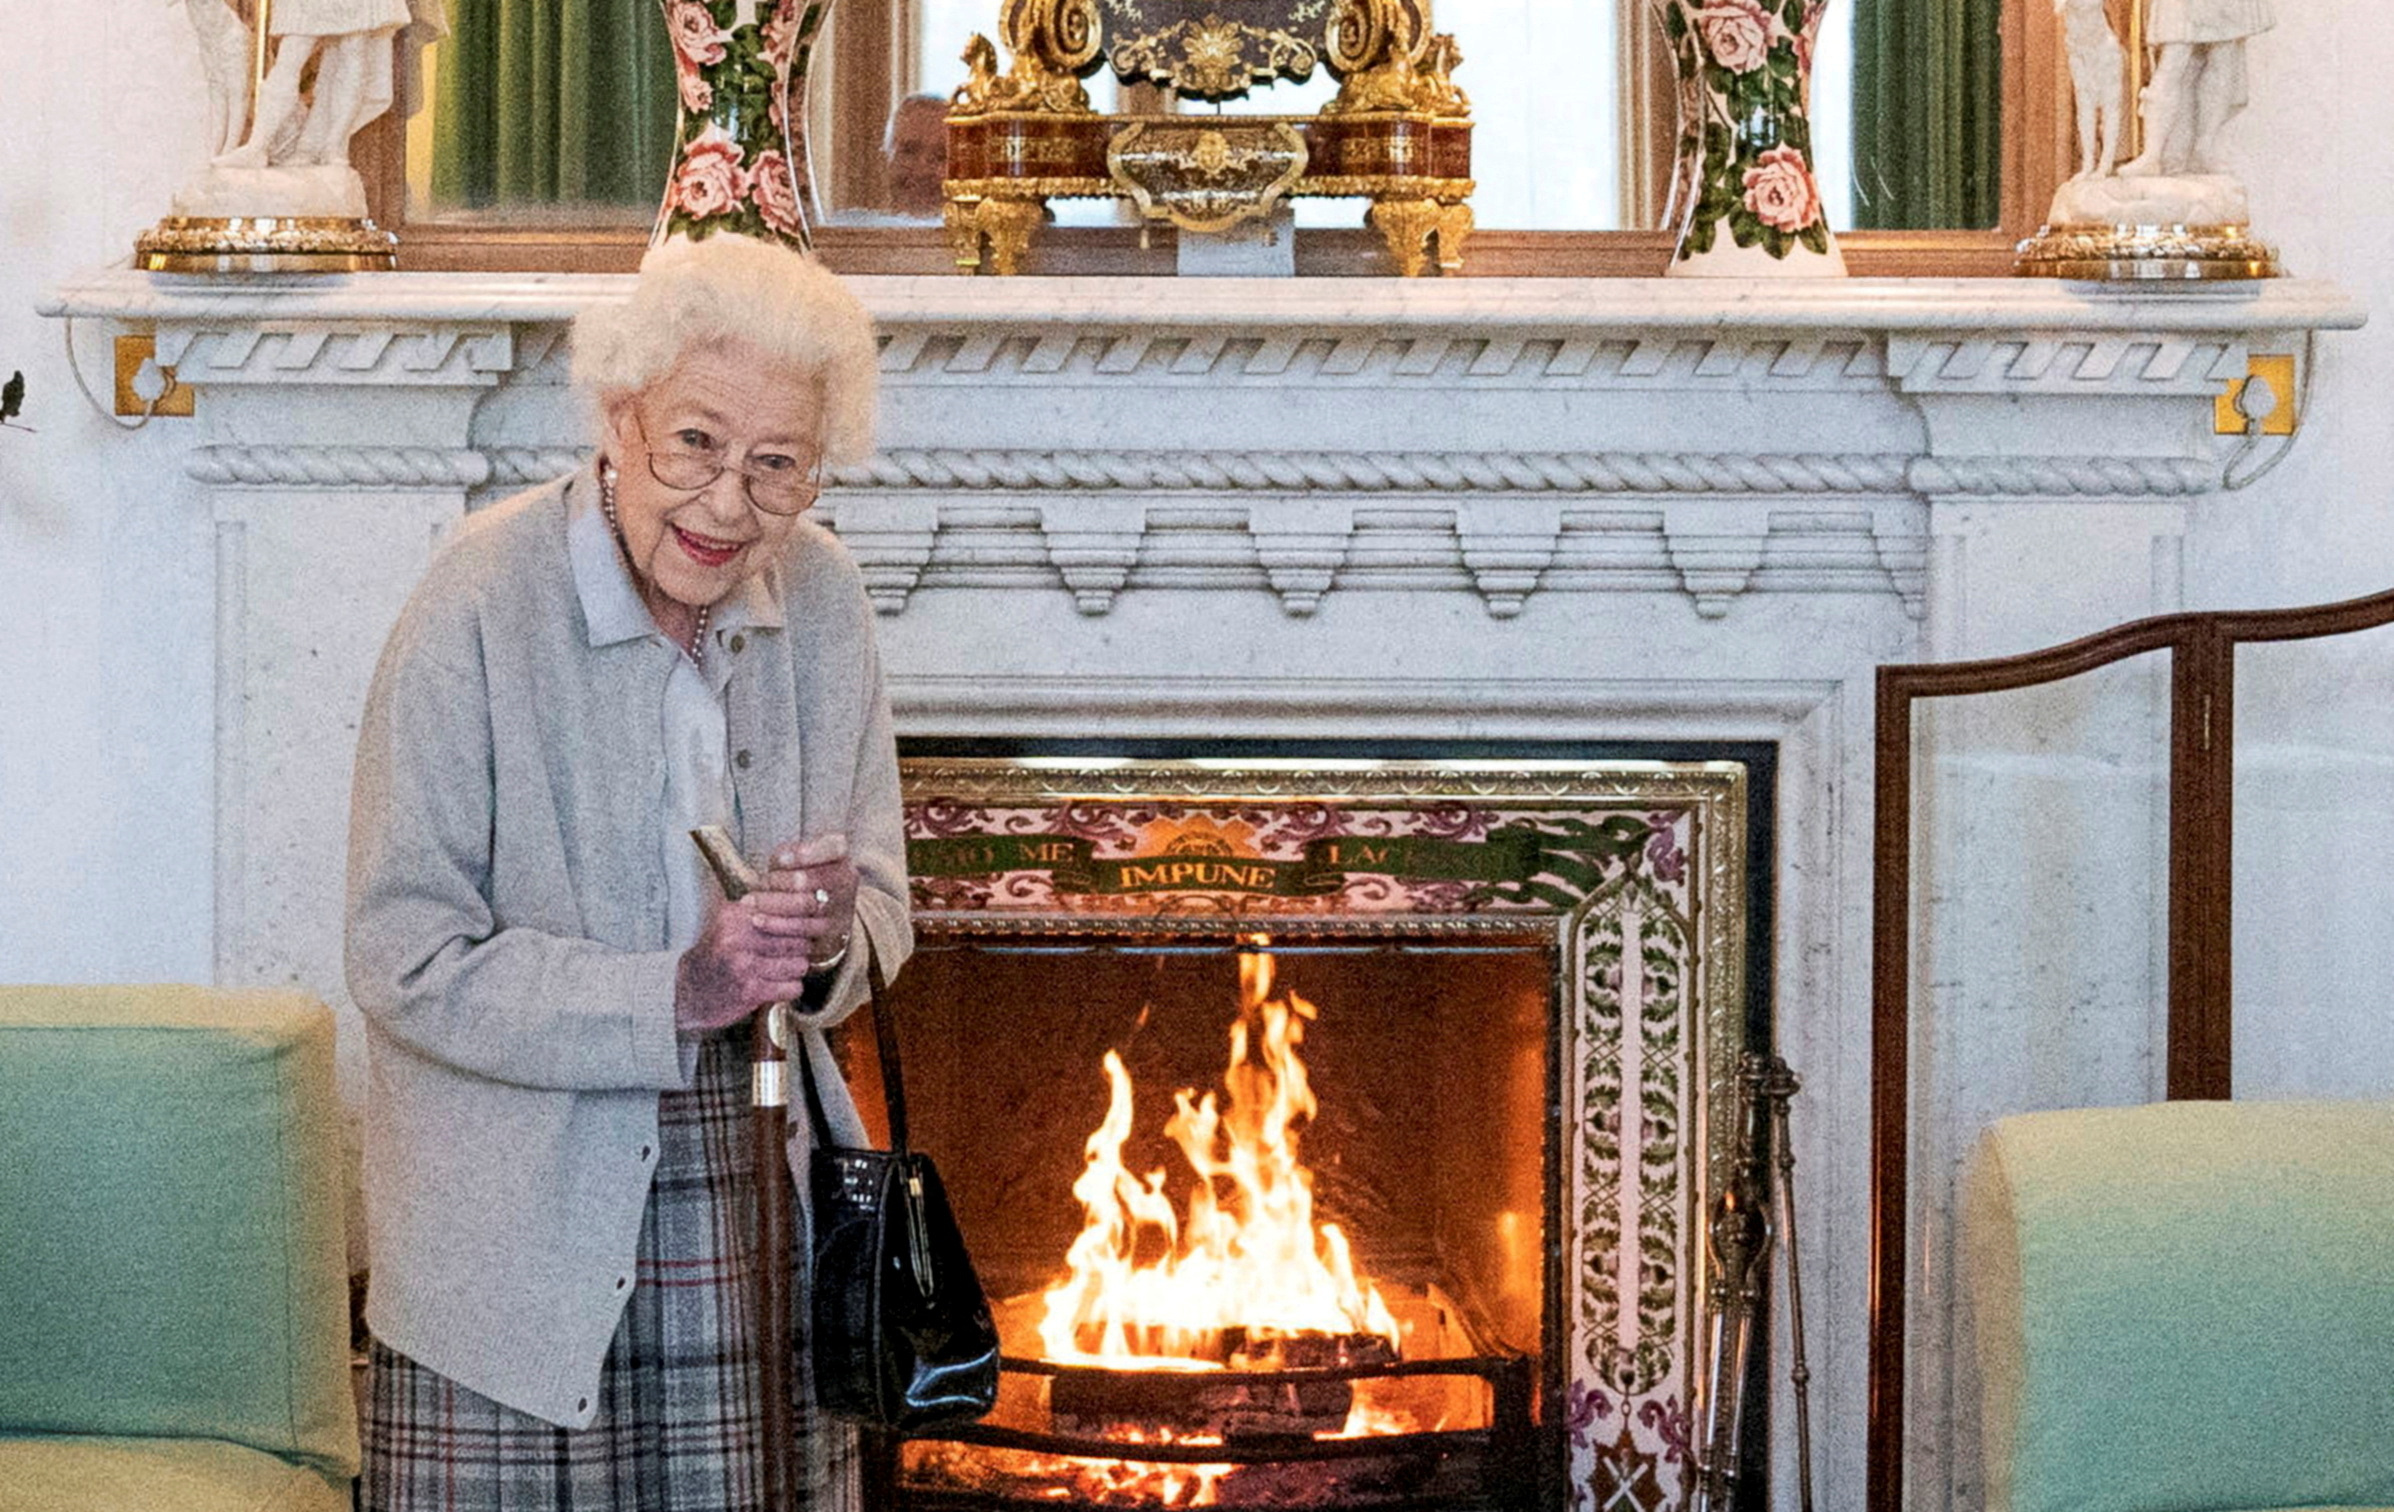 Θάνατος Βασίλισσας Ελισάβετ: «Δεν έχω μετανιώσει» – Η τελευταία εξομολόγηση της Βασίλισσας σε Σκωτσέζο ιερέα